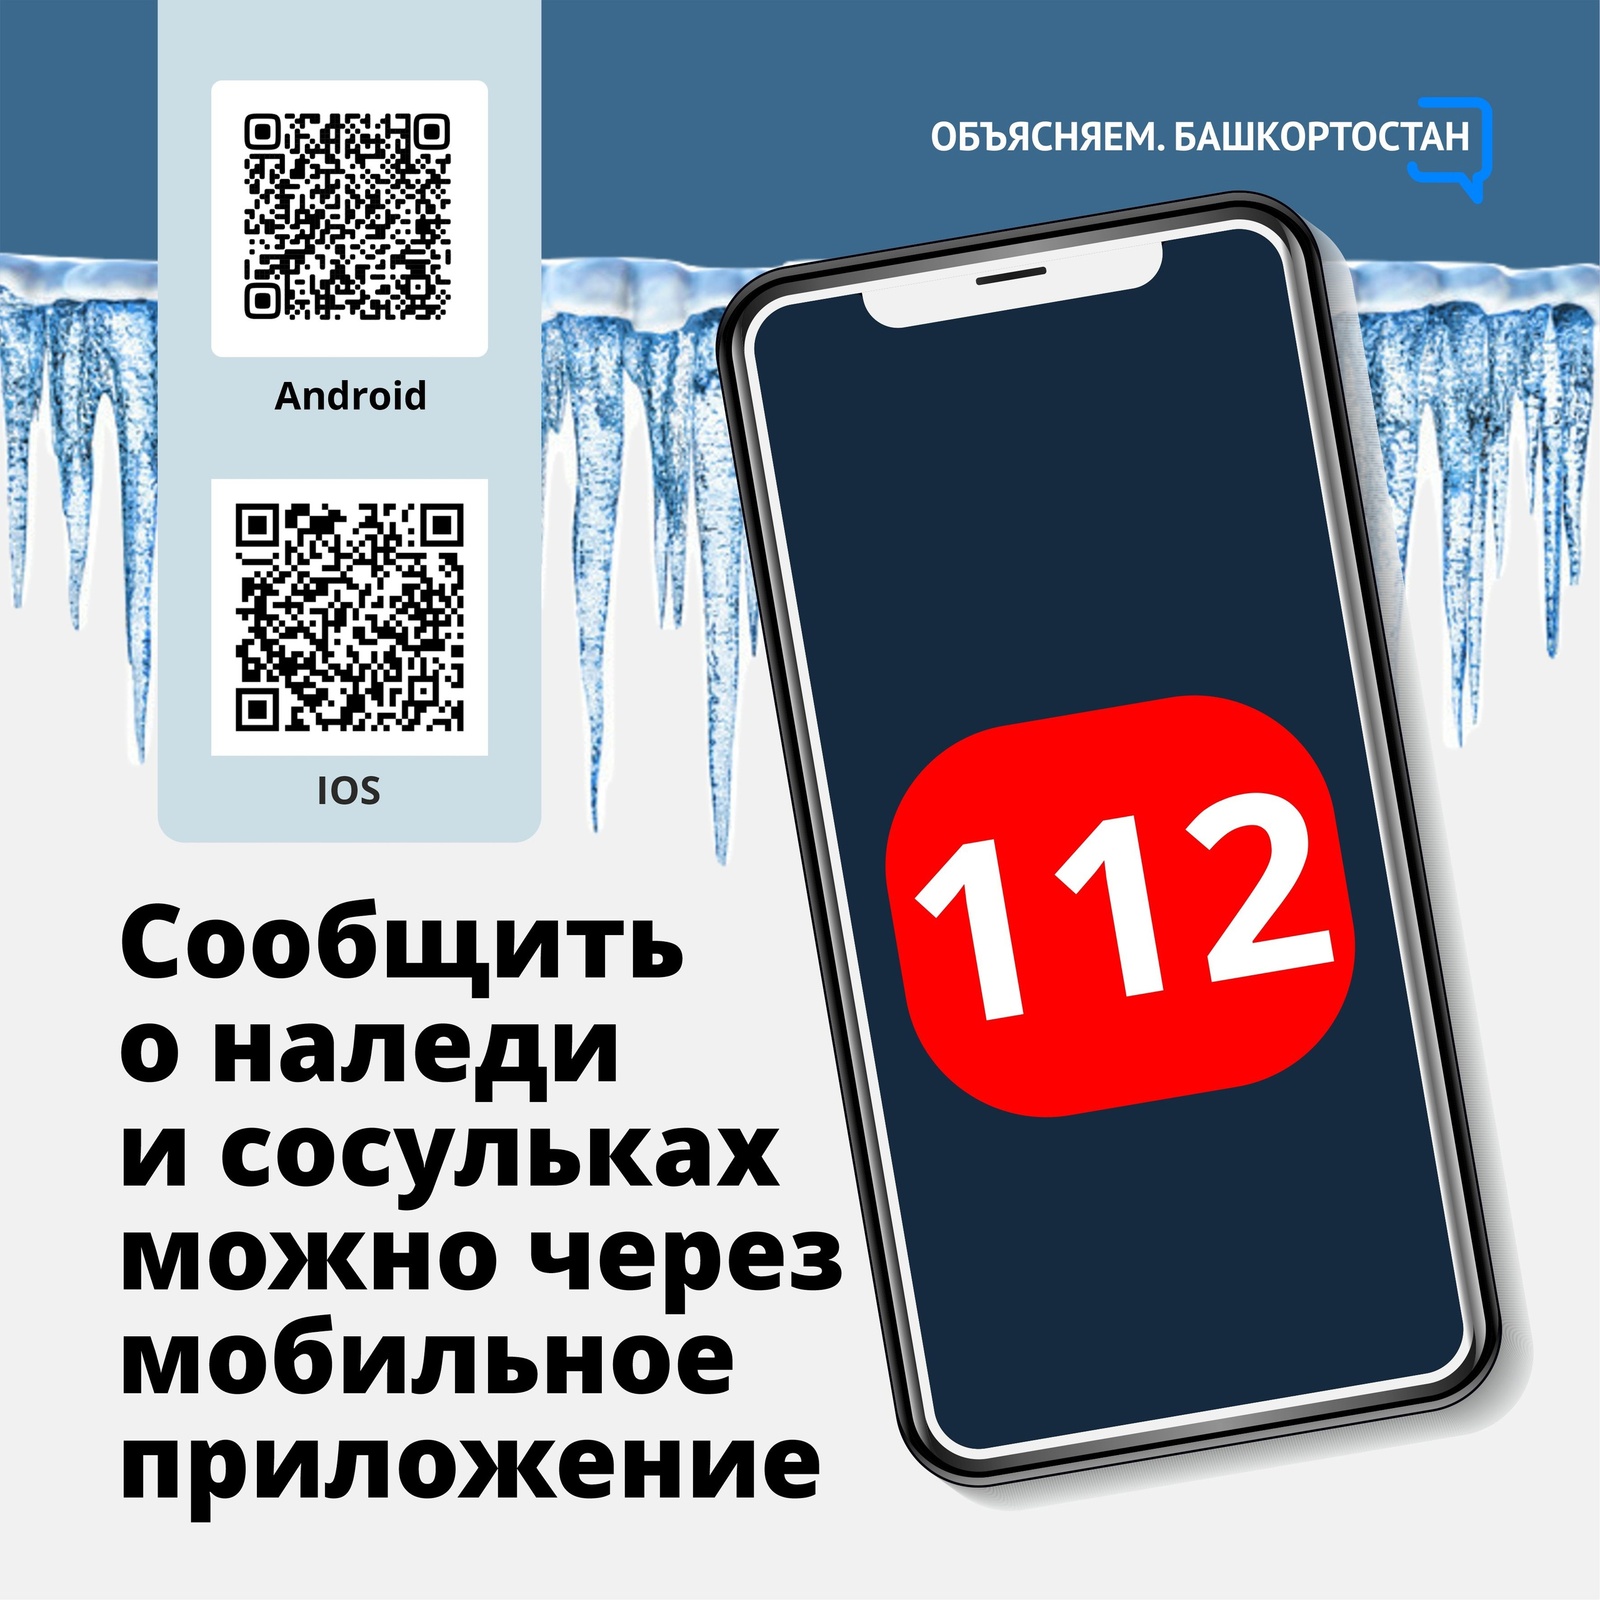 В Башкортостане работает мобильное приложение системы 112, позволяющее решить целый спектр проблем